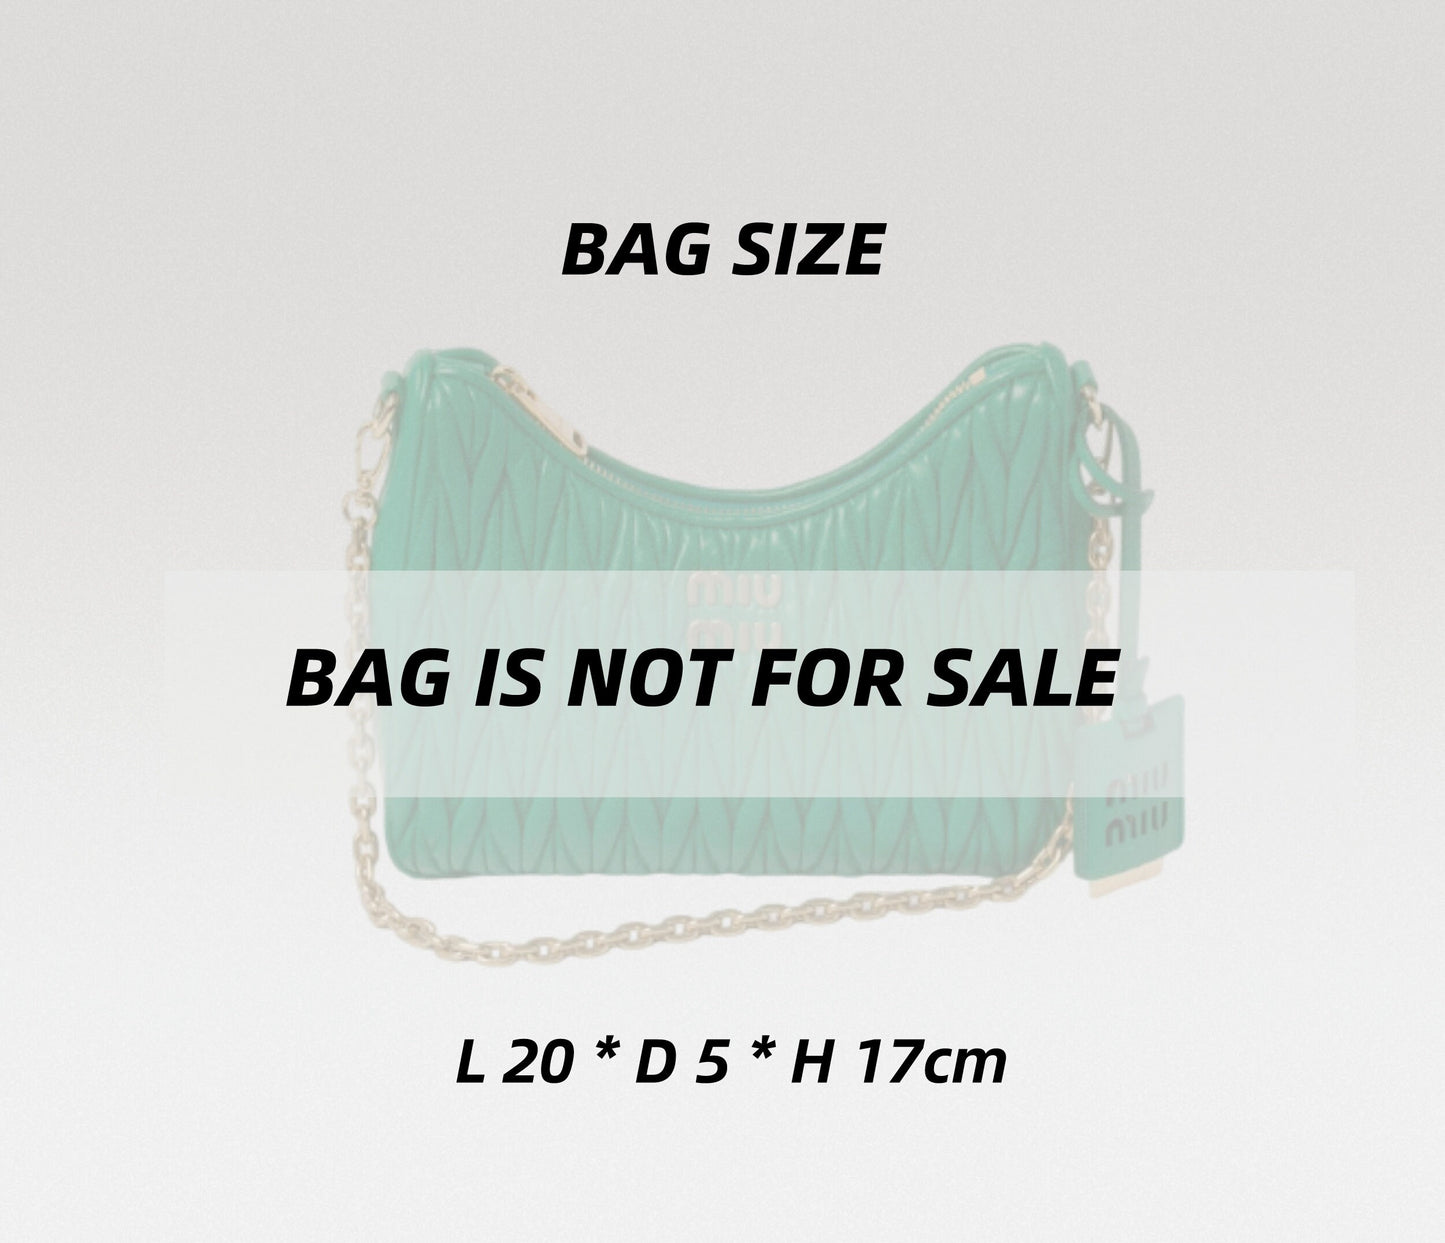 Bag Organizer For Matelassé nappa leather shoulder bag | Bag Insert For Shoulder Bag | Felt Bag Organizer For Handbag Bag